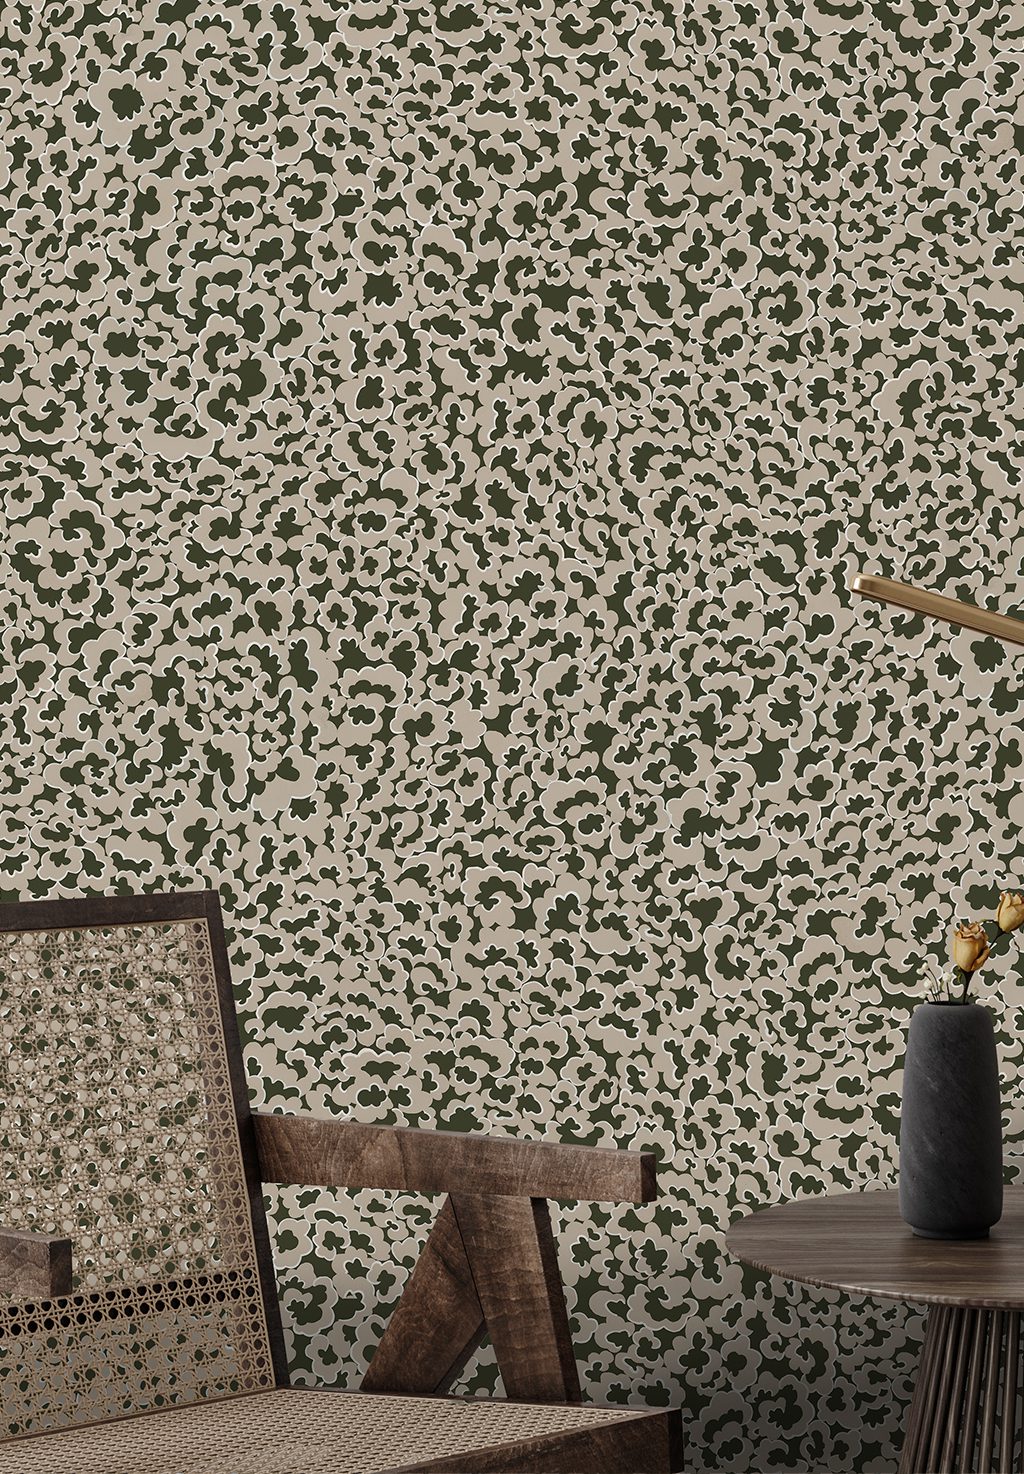 Josephine-Munsey-wallpaper-clouds-small-pattern-repeat-tonal-stylized-chaingate-green